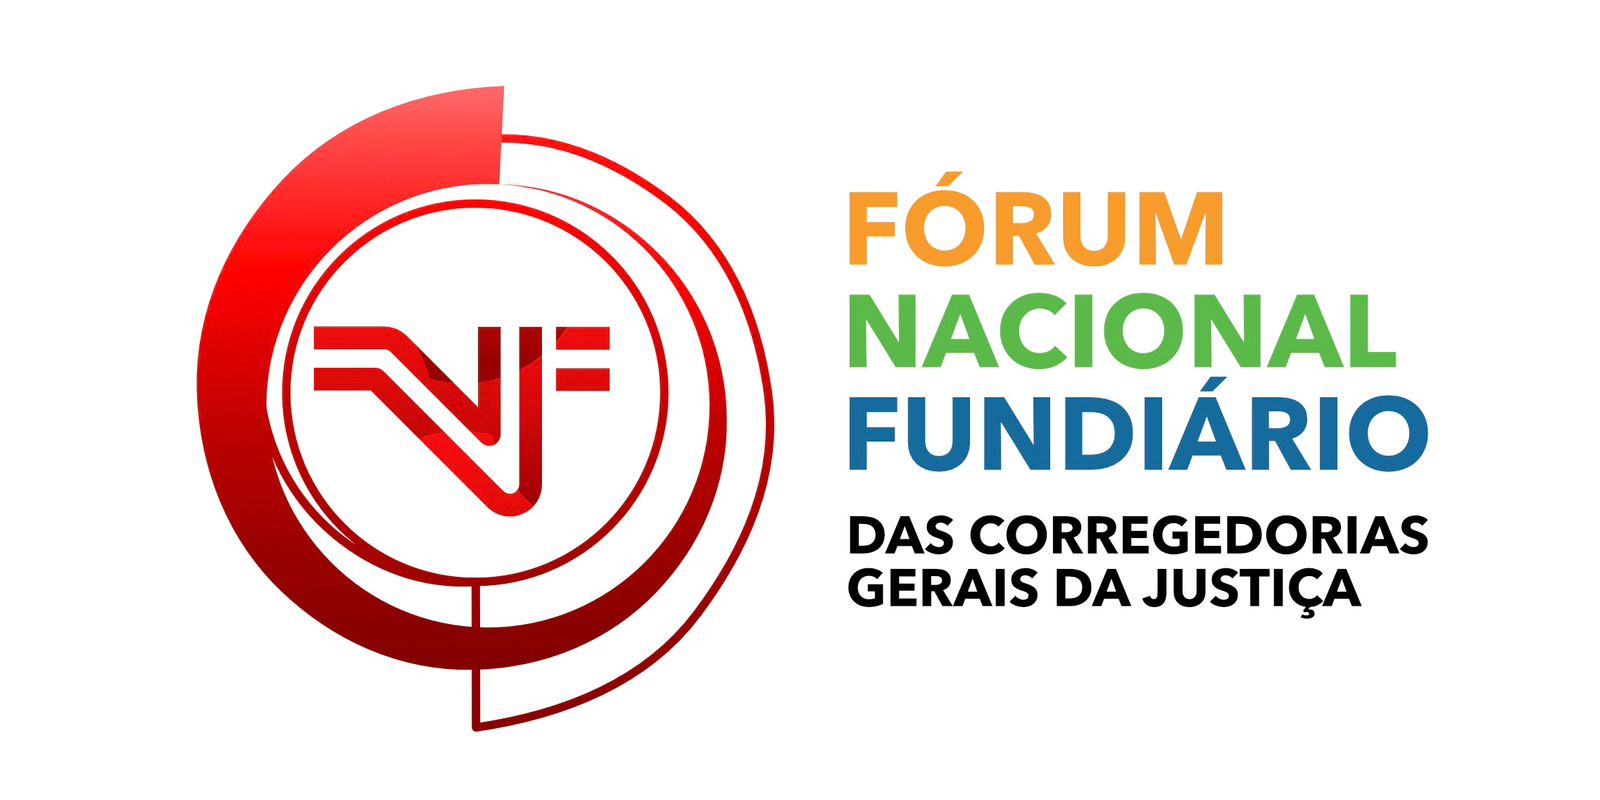 Logomarca do Fórum Fundiário Nacional, das Corregedorias Gerais da Justiça, em fundo branco, com letras nas cores, vermelho e verde, amarelo e azul.